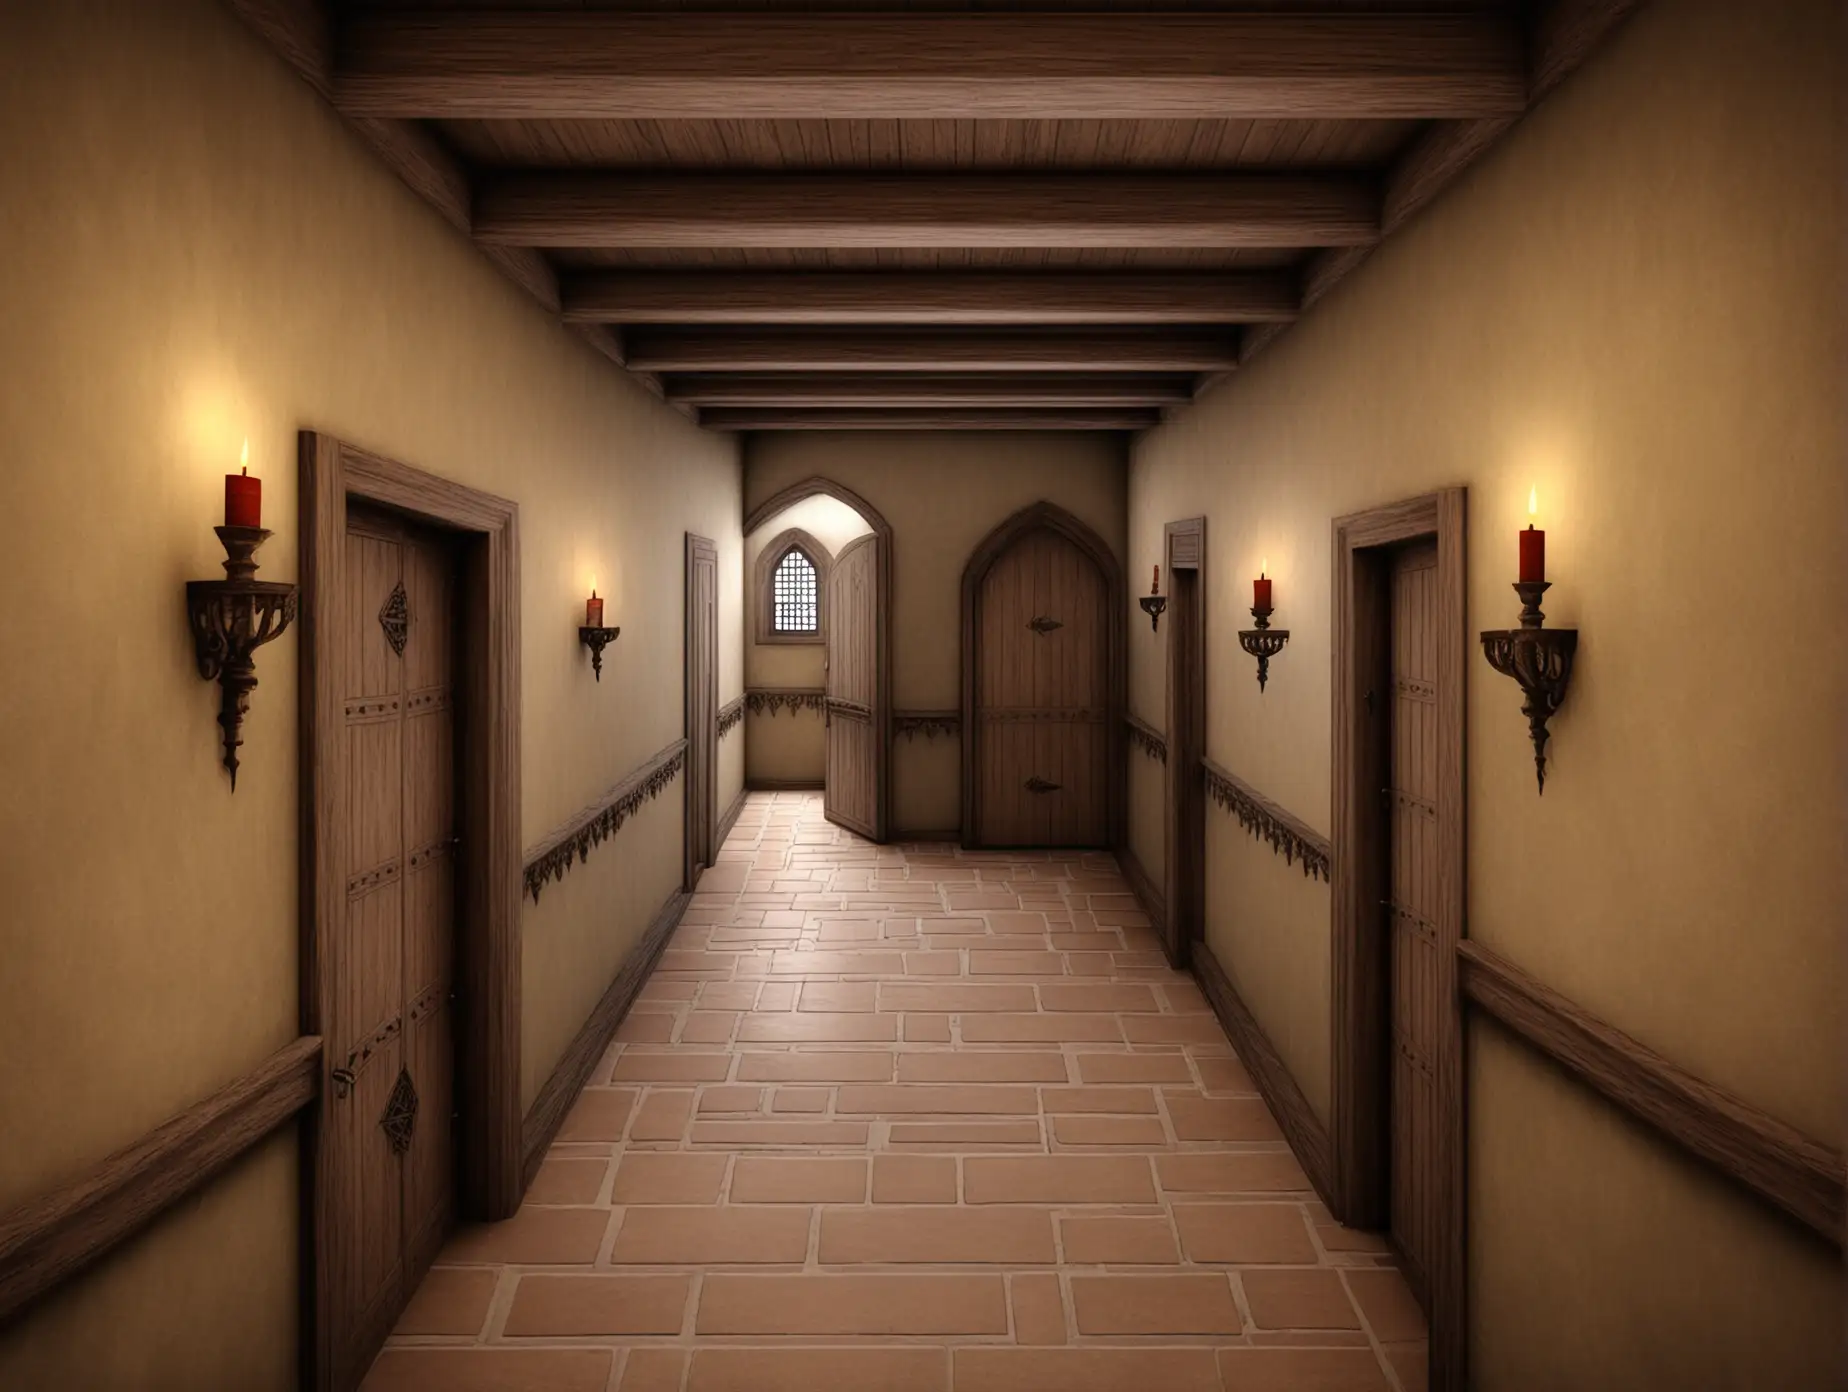 коридор дома, второй этаж, в средневековом стиле, 2 двери и лестница вниз на первый этаж, Фэнтэзи